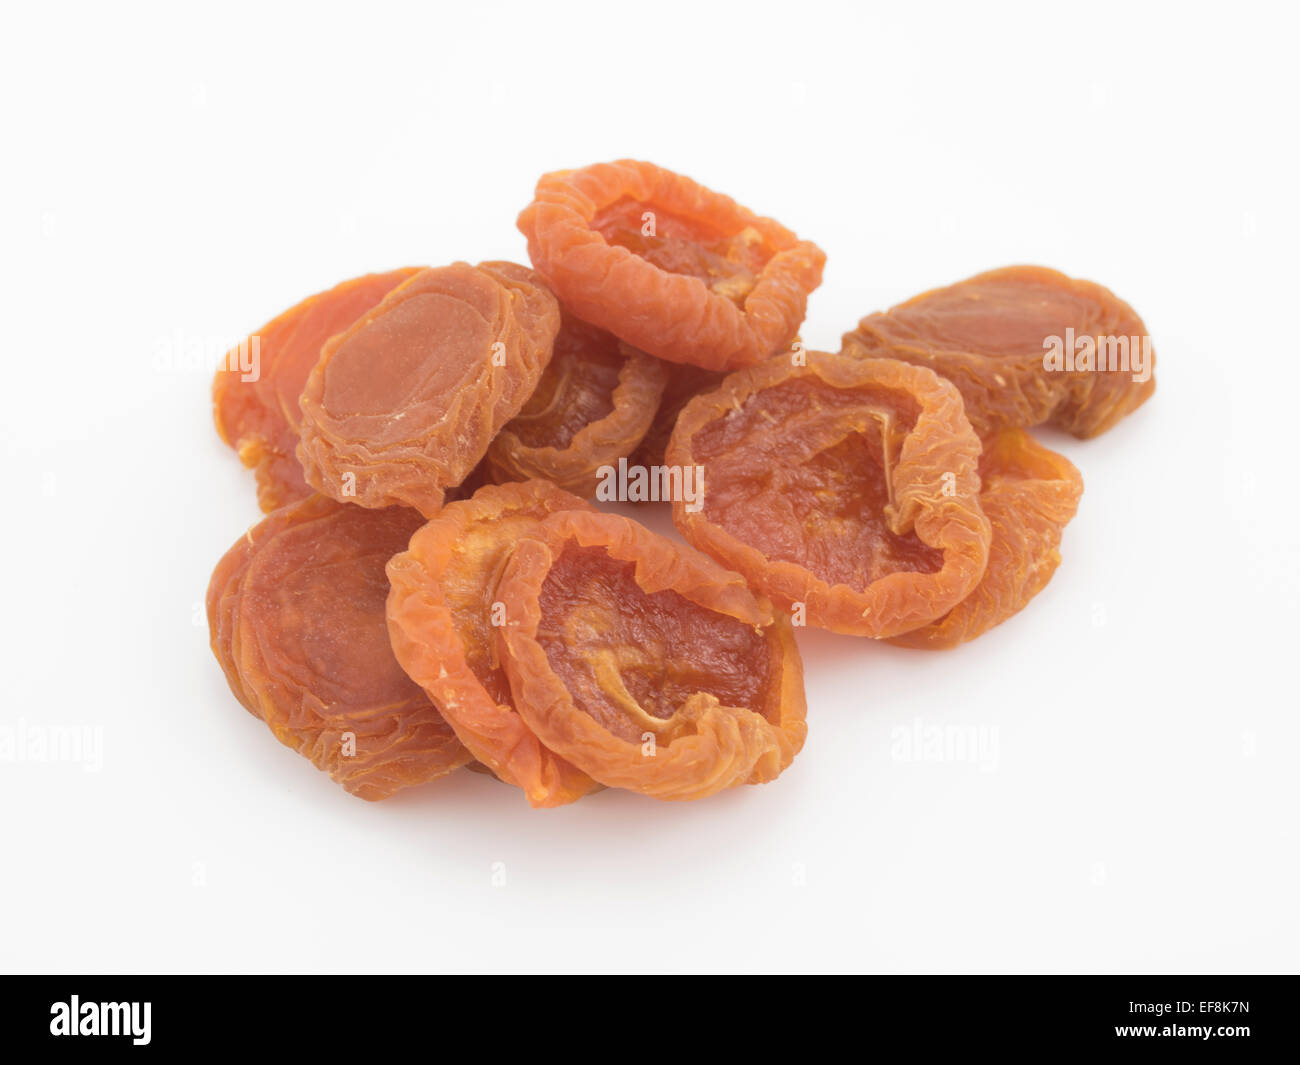 Getrocknete Aprikosen - traditionellen Trockenfrüchten. Reich an Ballaststoffen, Carotinoiden, Vitamin A und Kalium. Stockfoto